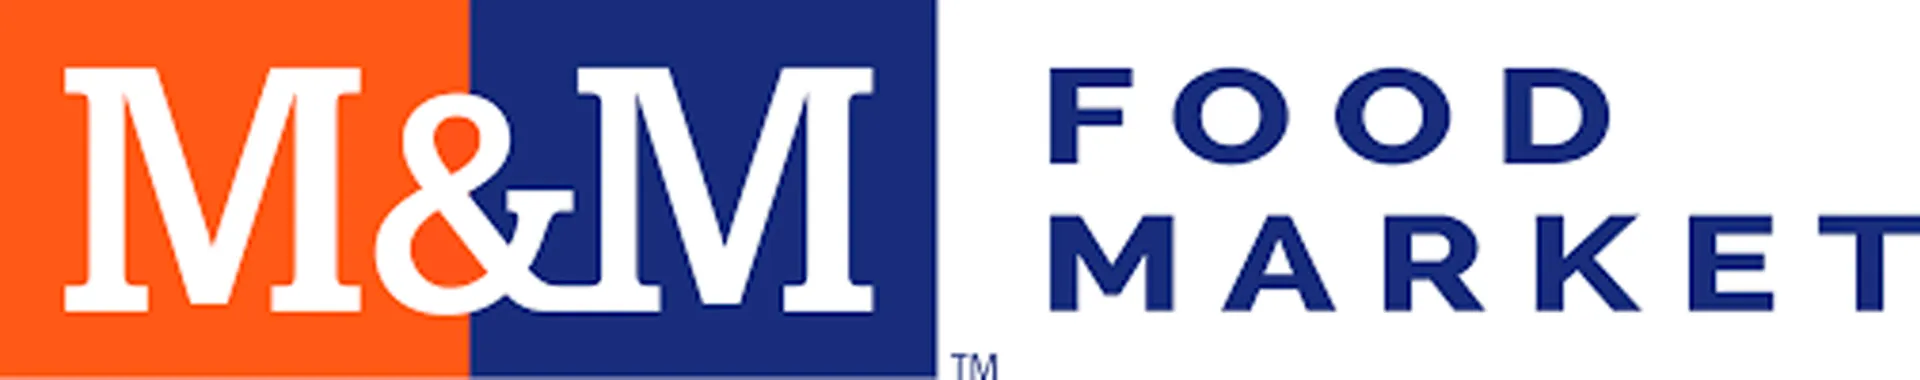 M&M FOOD MARKET logo